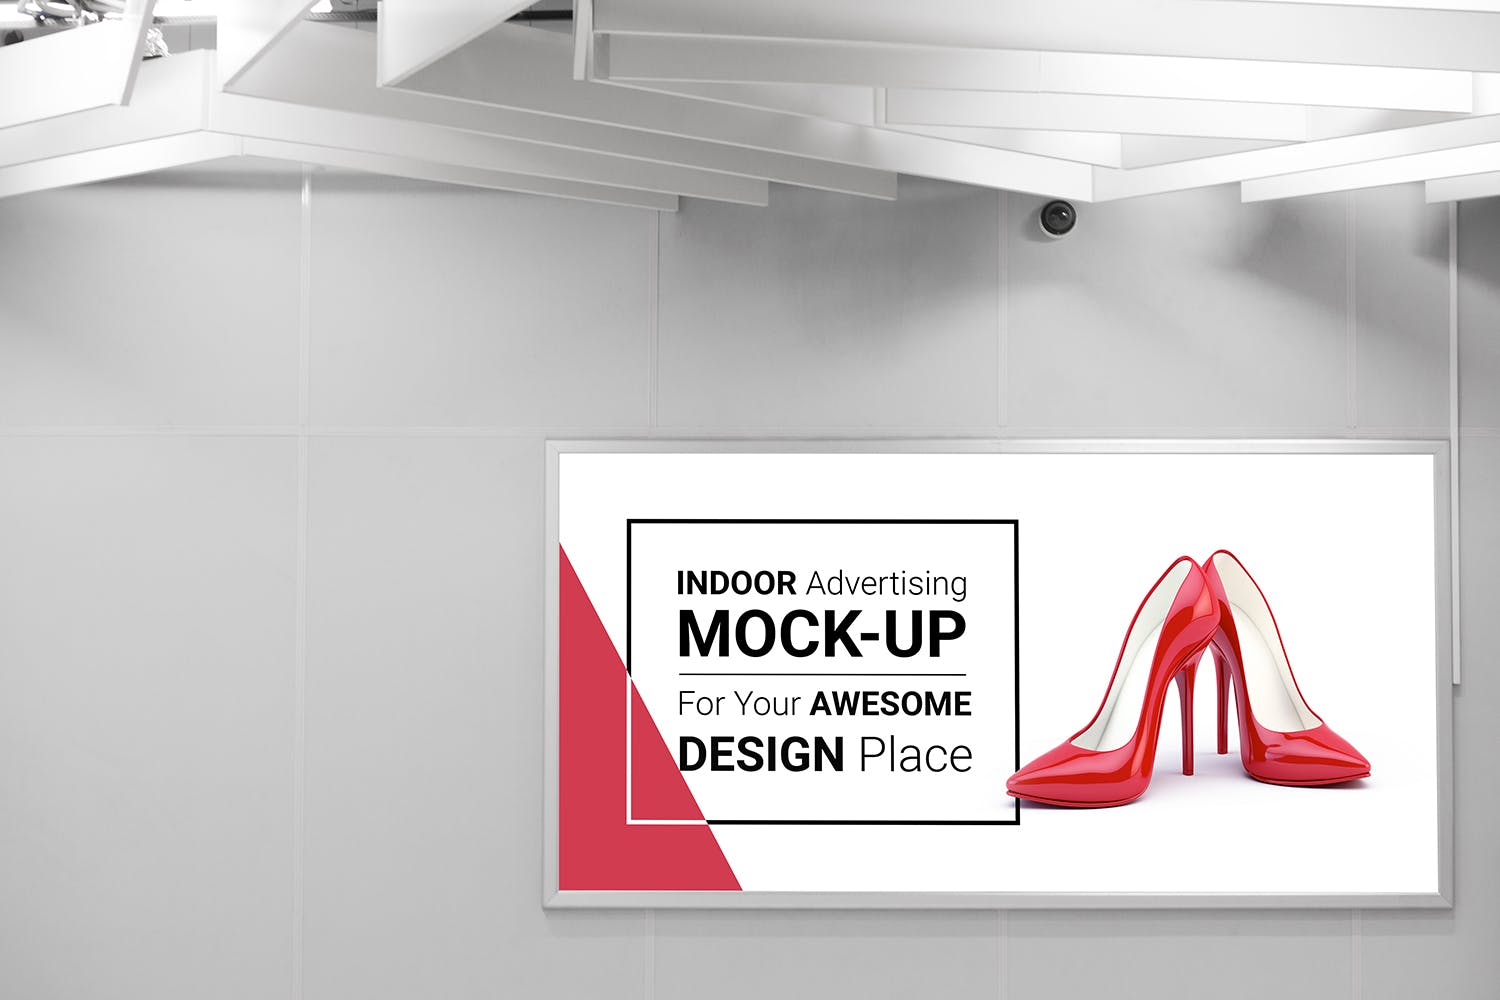 室内广告牌图片效果图样机模板 Indoor Advertising Mock-Up插图(4)